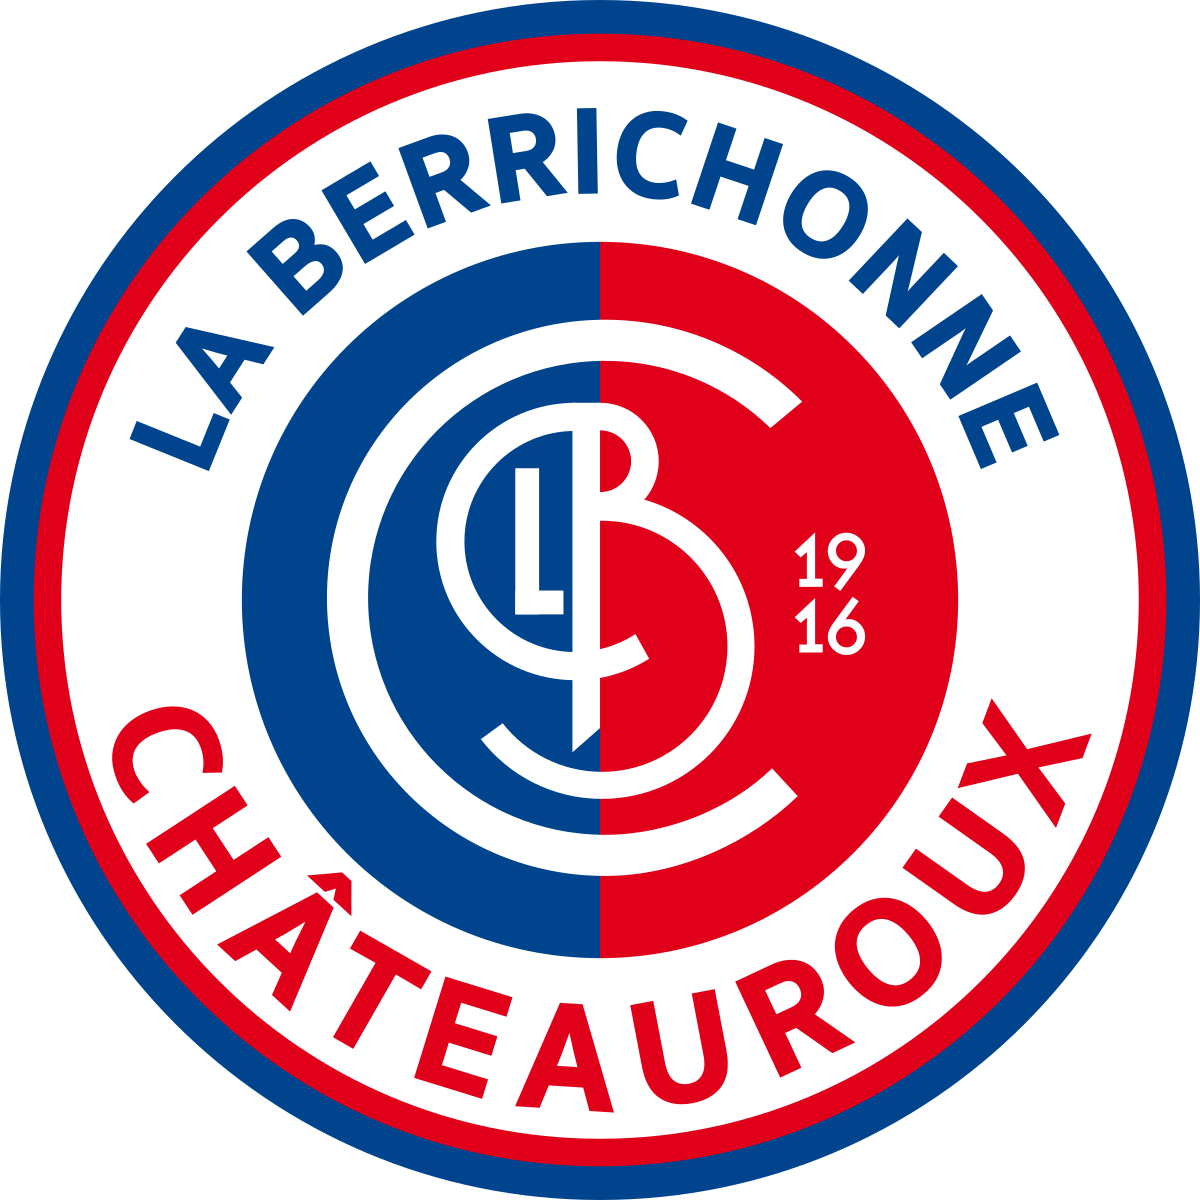 LBC Chateauroux